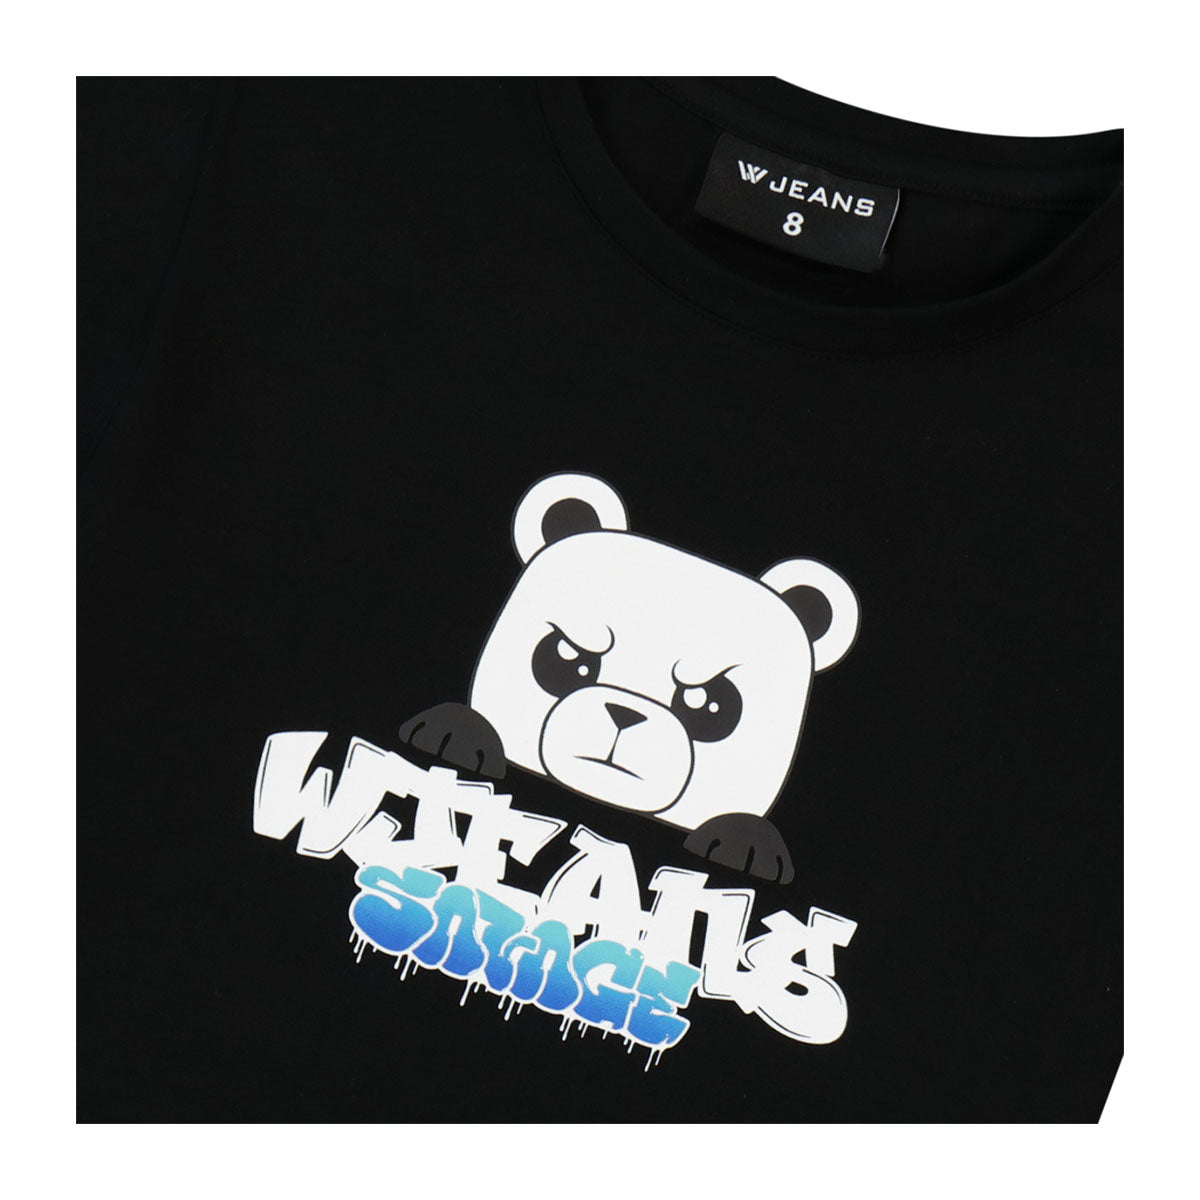 חולצת טי שרט W JEANS הדפס דובי לילדים